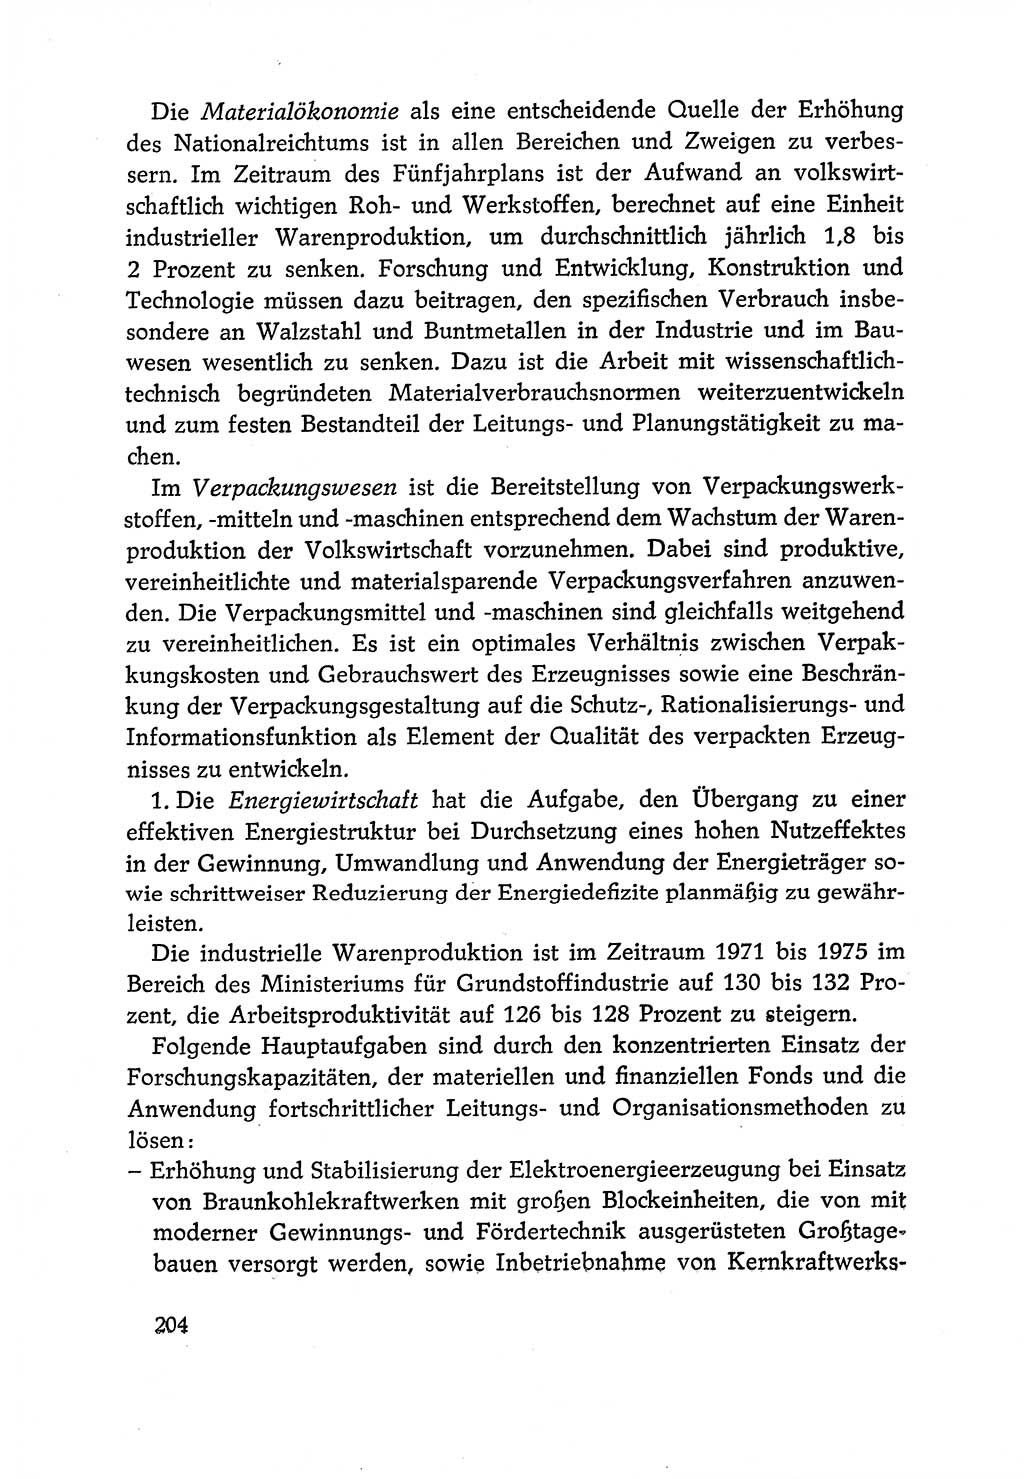 Dokumente der Sozialistischen Einheitspartei Deutschlands (SED) [Deutsche Demokratische Republik (DDR)] 1970-1971, Seite 204 (Dok. SED DDR 1970-1971, S. 204)